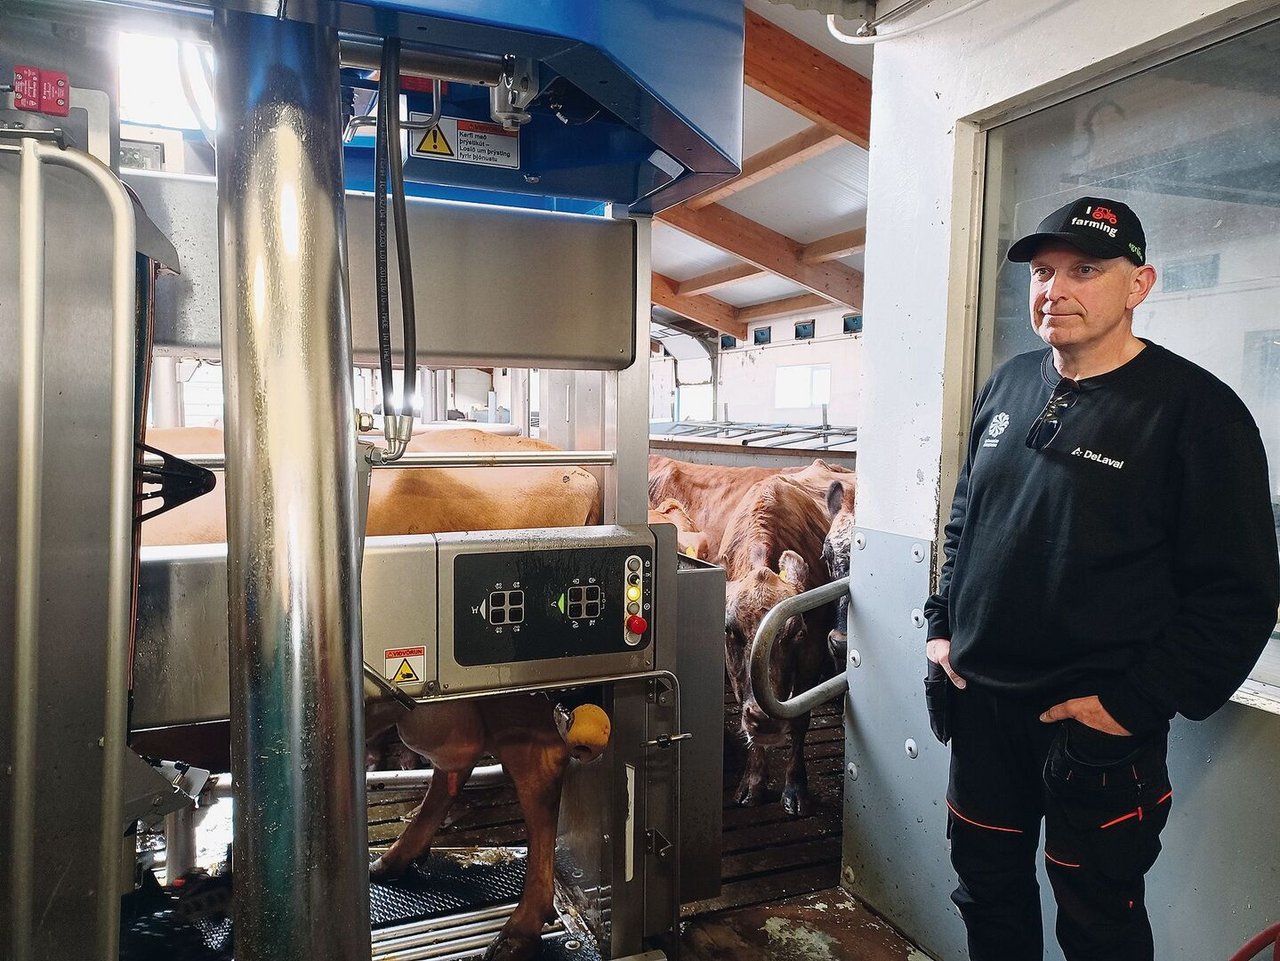 Þorgrímur Einar Guðbjartsson und seine Frau führen im Westen Islands einen Milchbetrieb mit Hofladen.